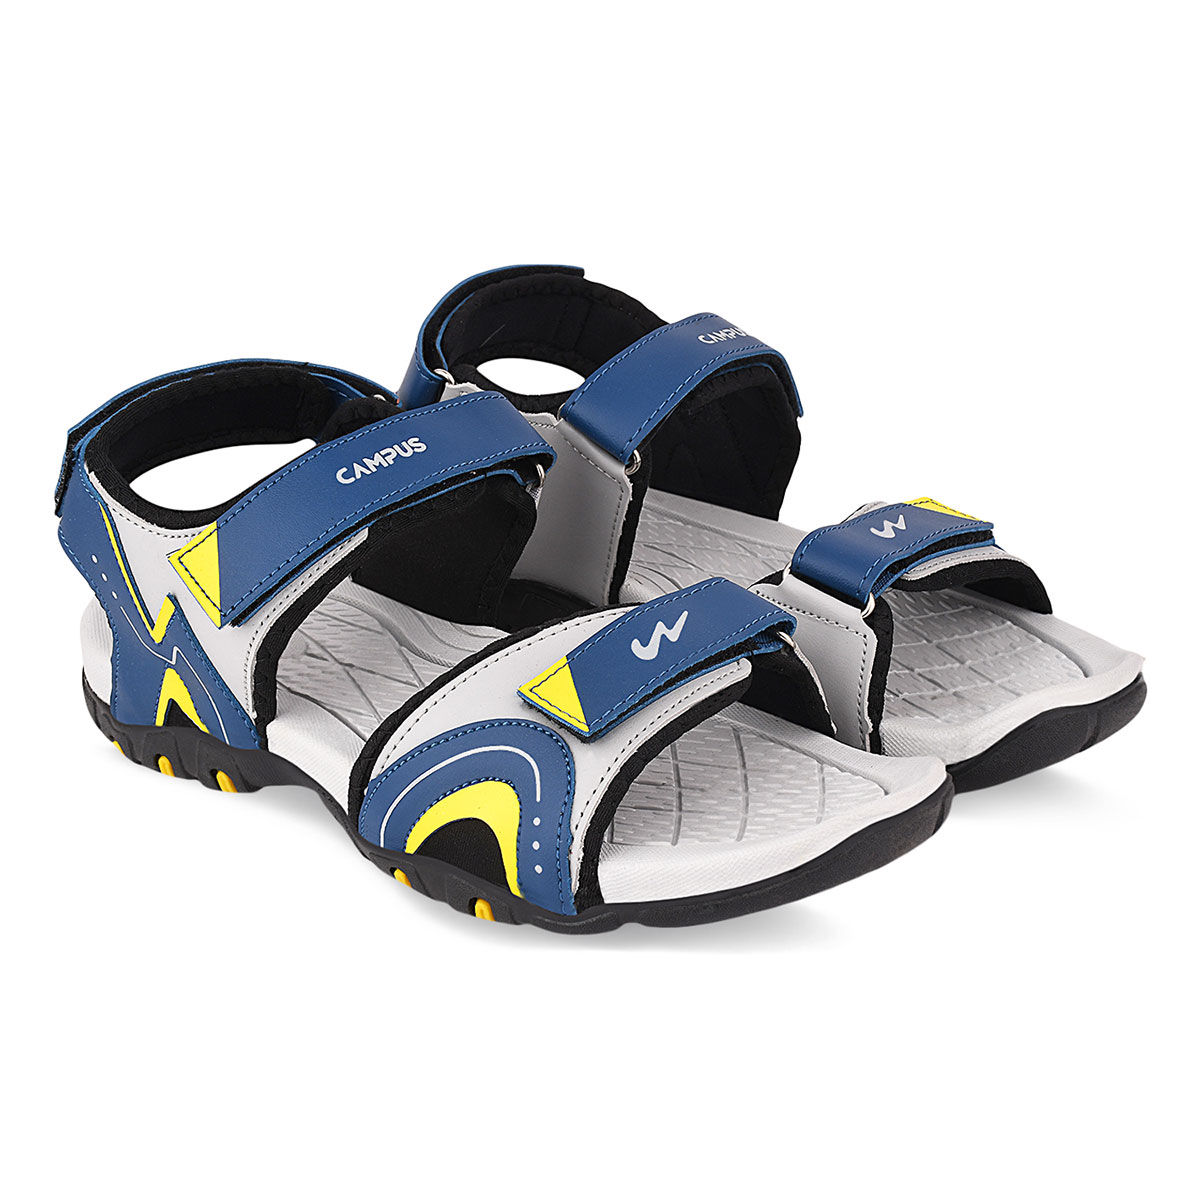 Buy Campus Gc-22129 Grey Men Sandals online